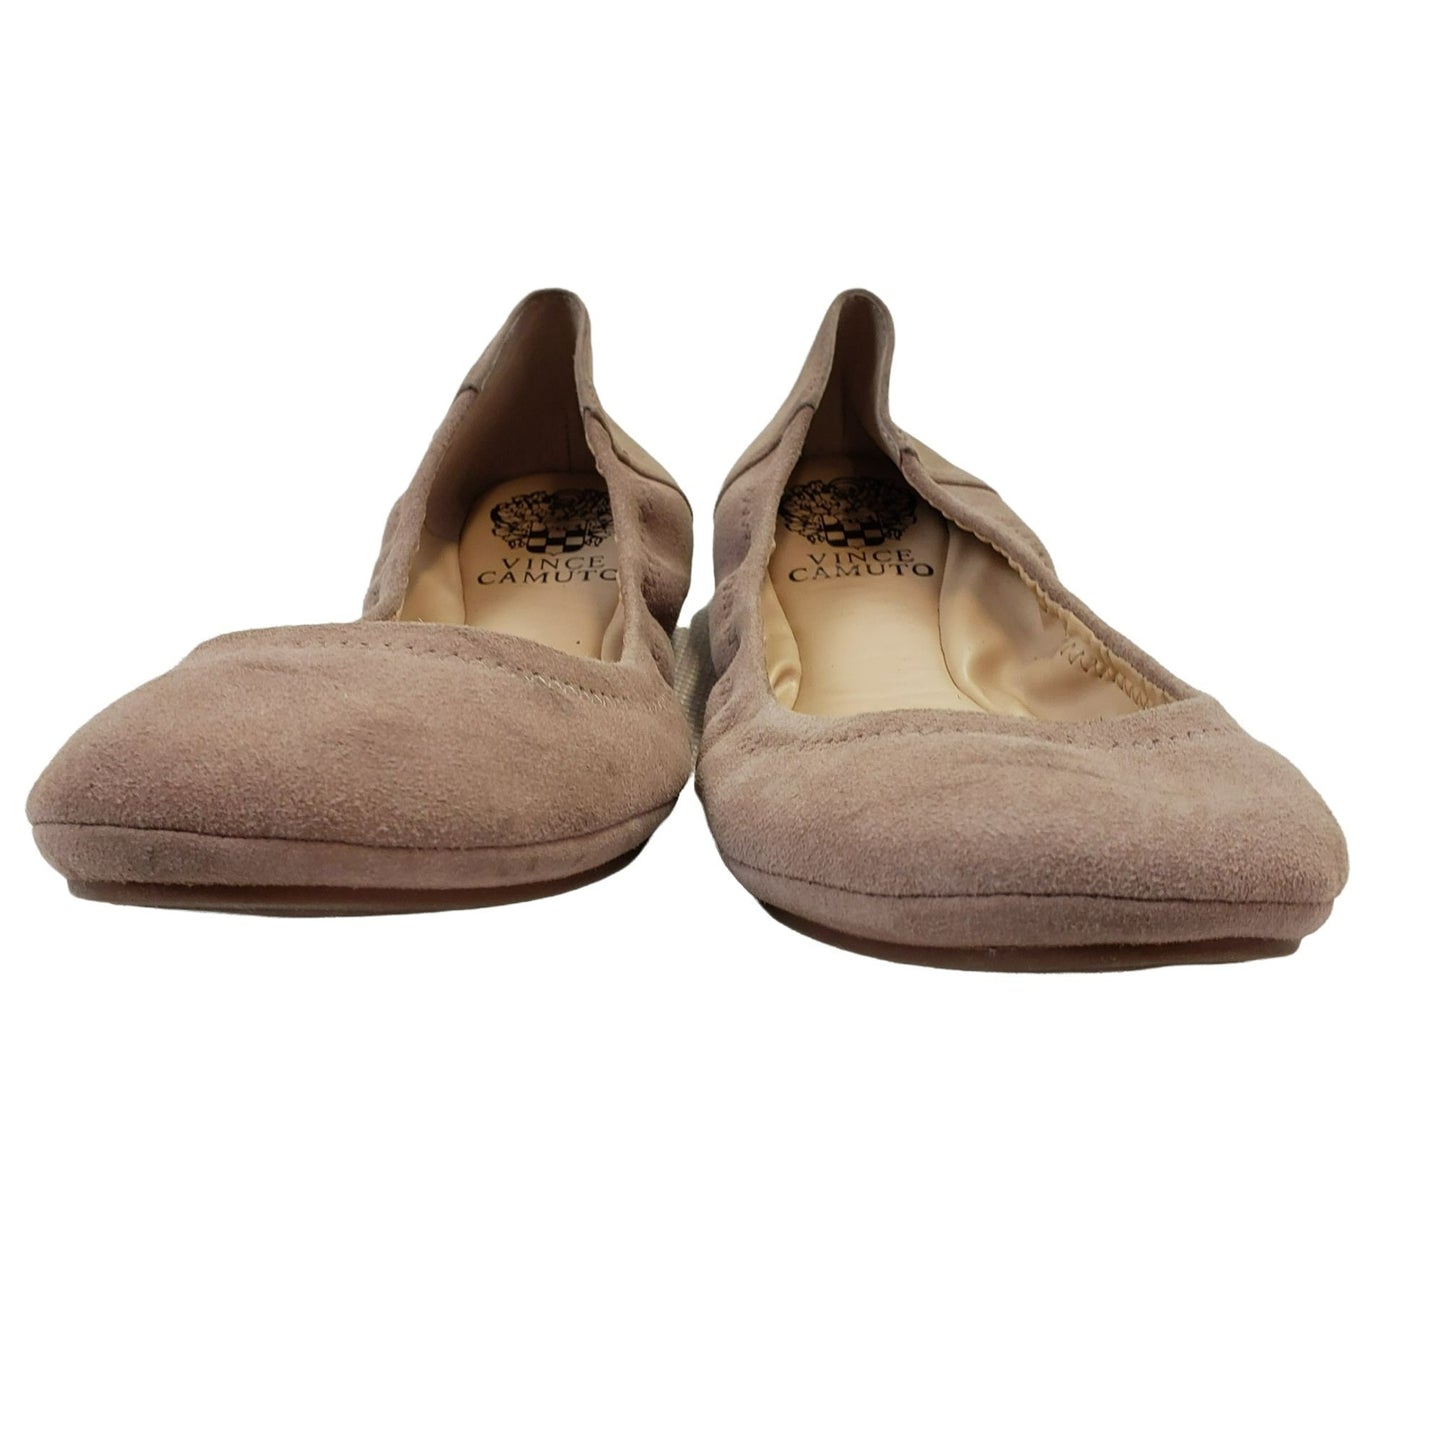 Vince Camuto Ellen Suede Leather Ballet Flats Size 7.5